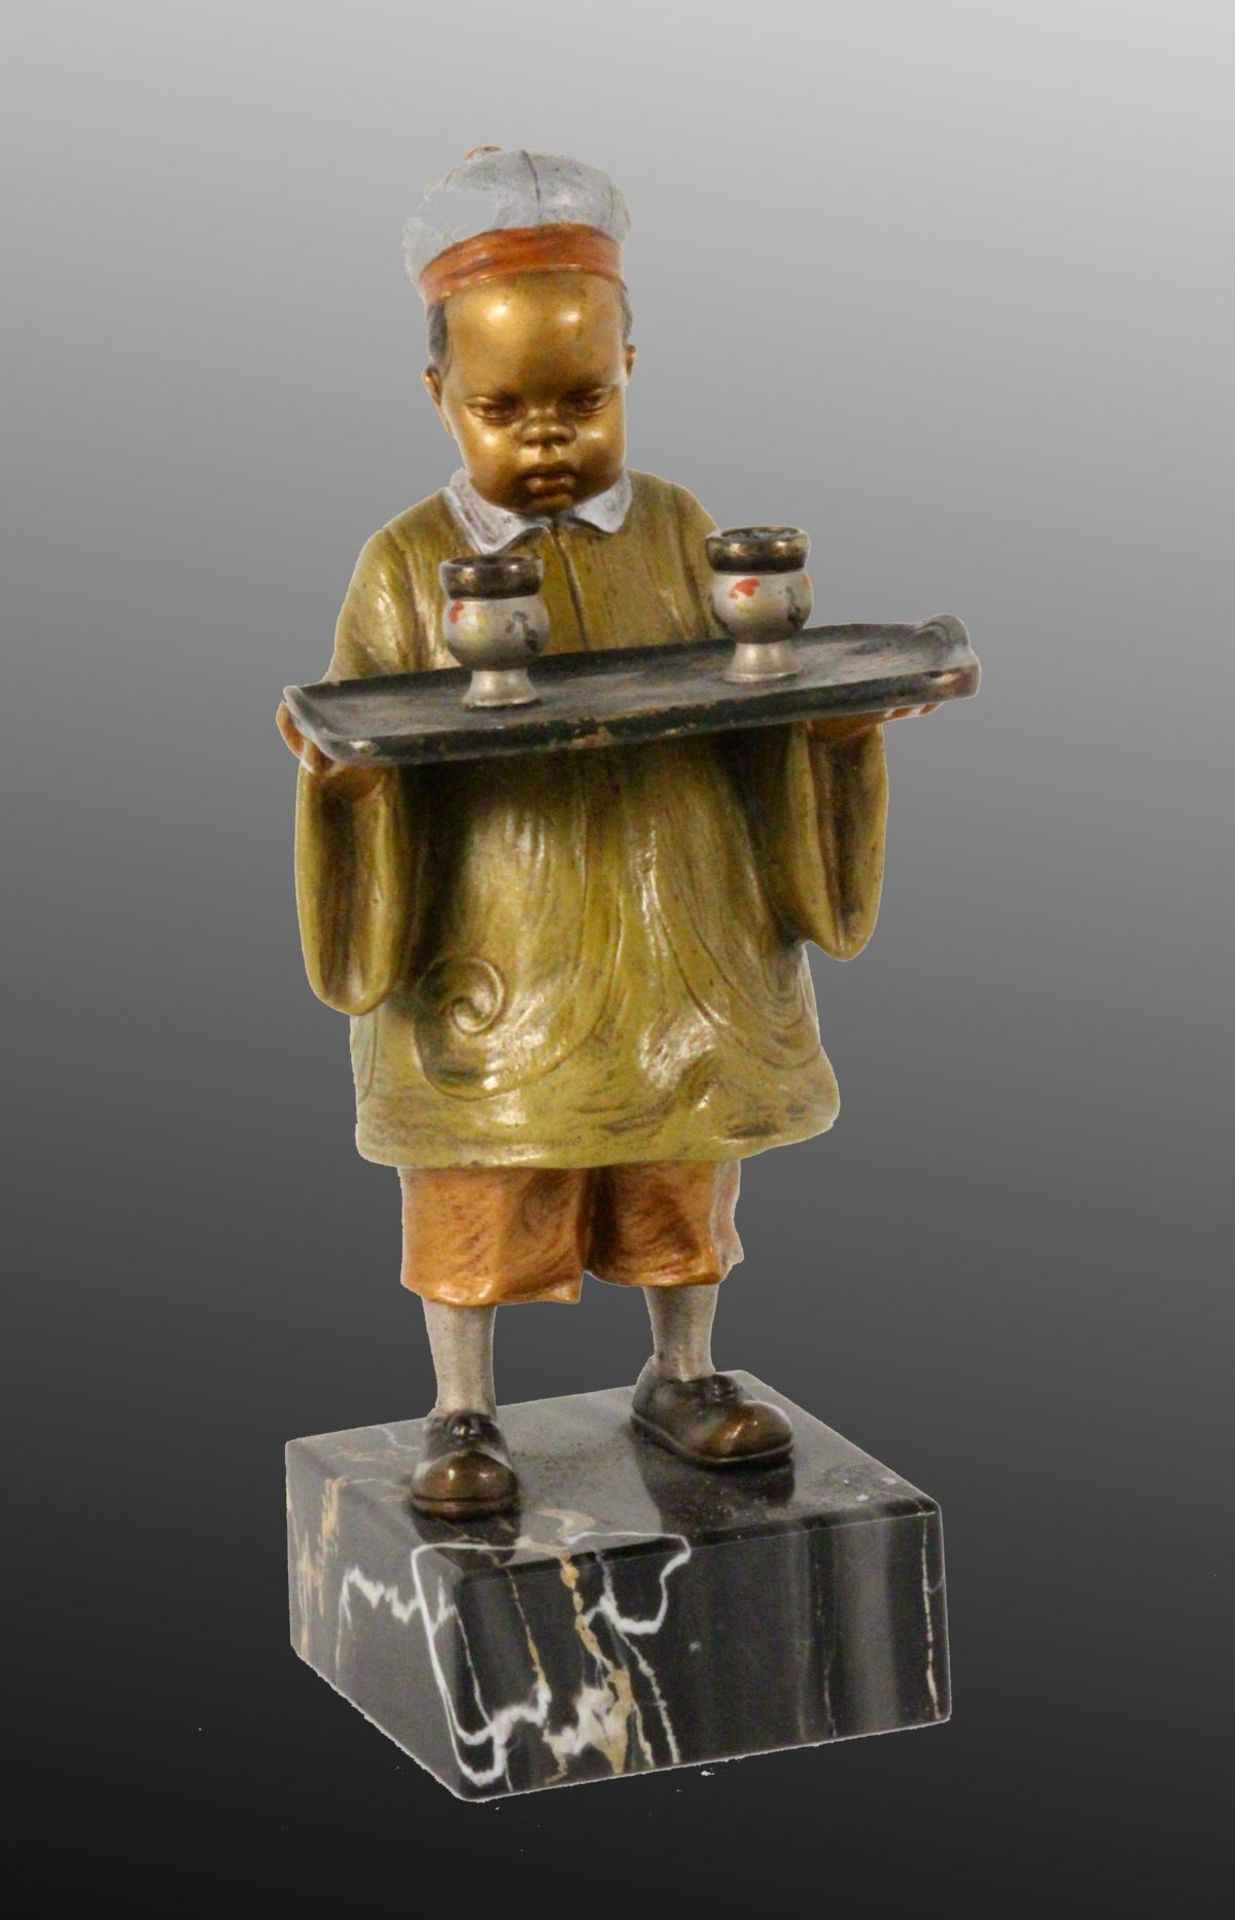 CHINESISCHER JUNGE MIT TABLETTT Wiener Bronze um 1900 Auf Marmorsockel, bemalte Bronze. H.13/15,